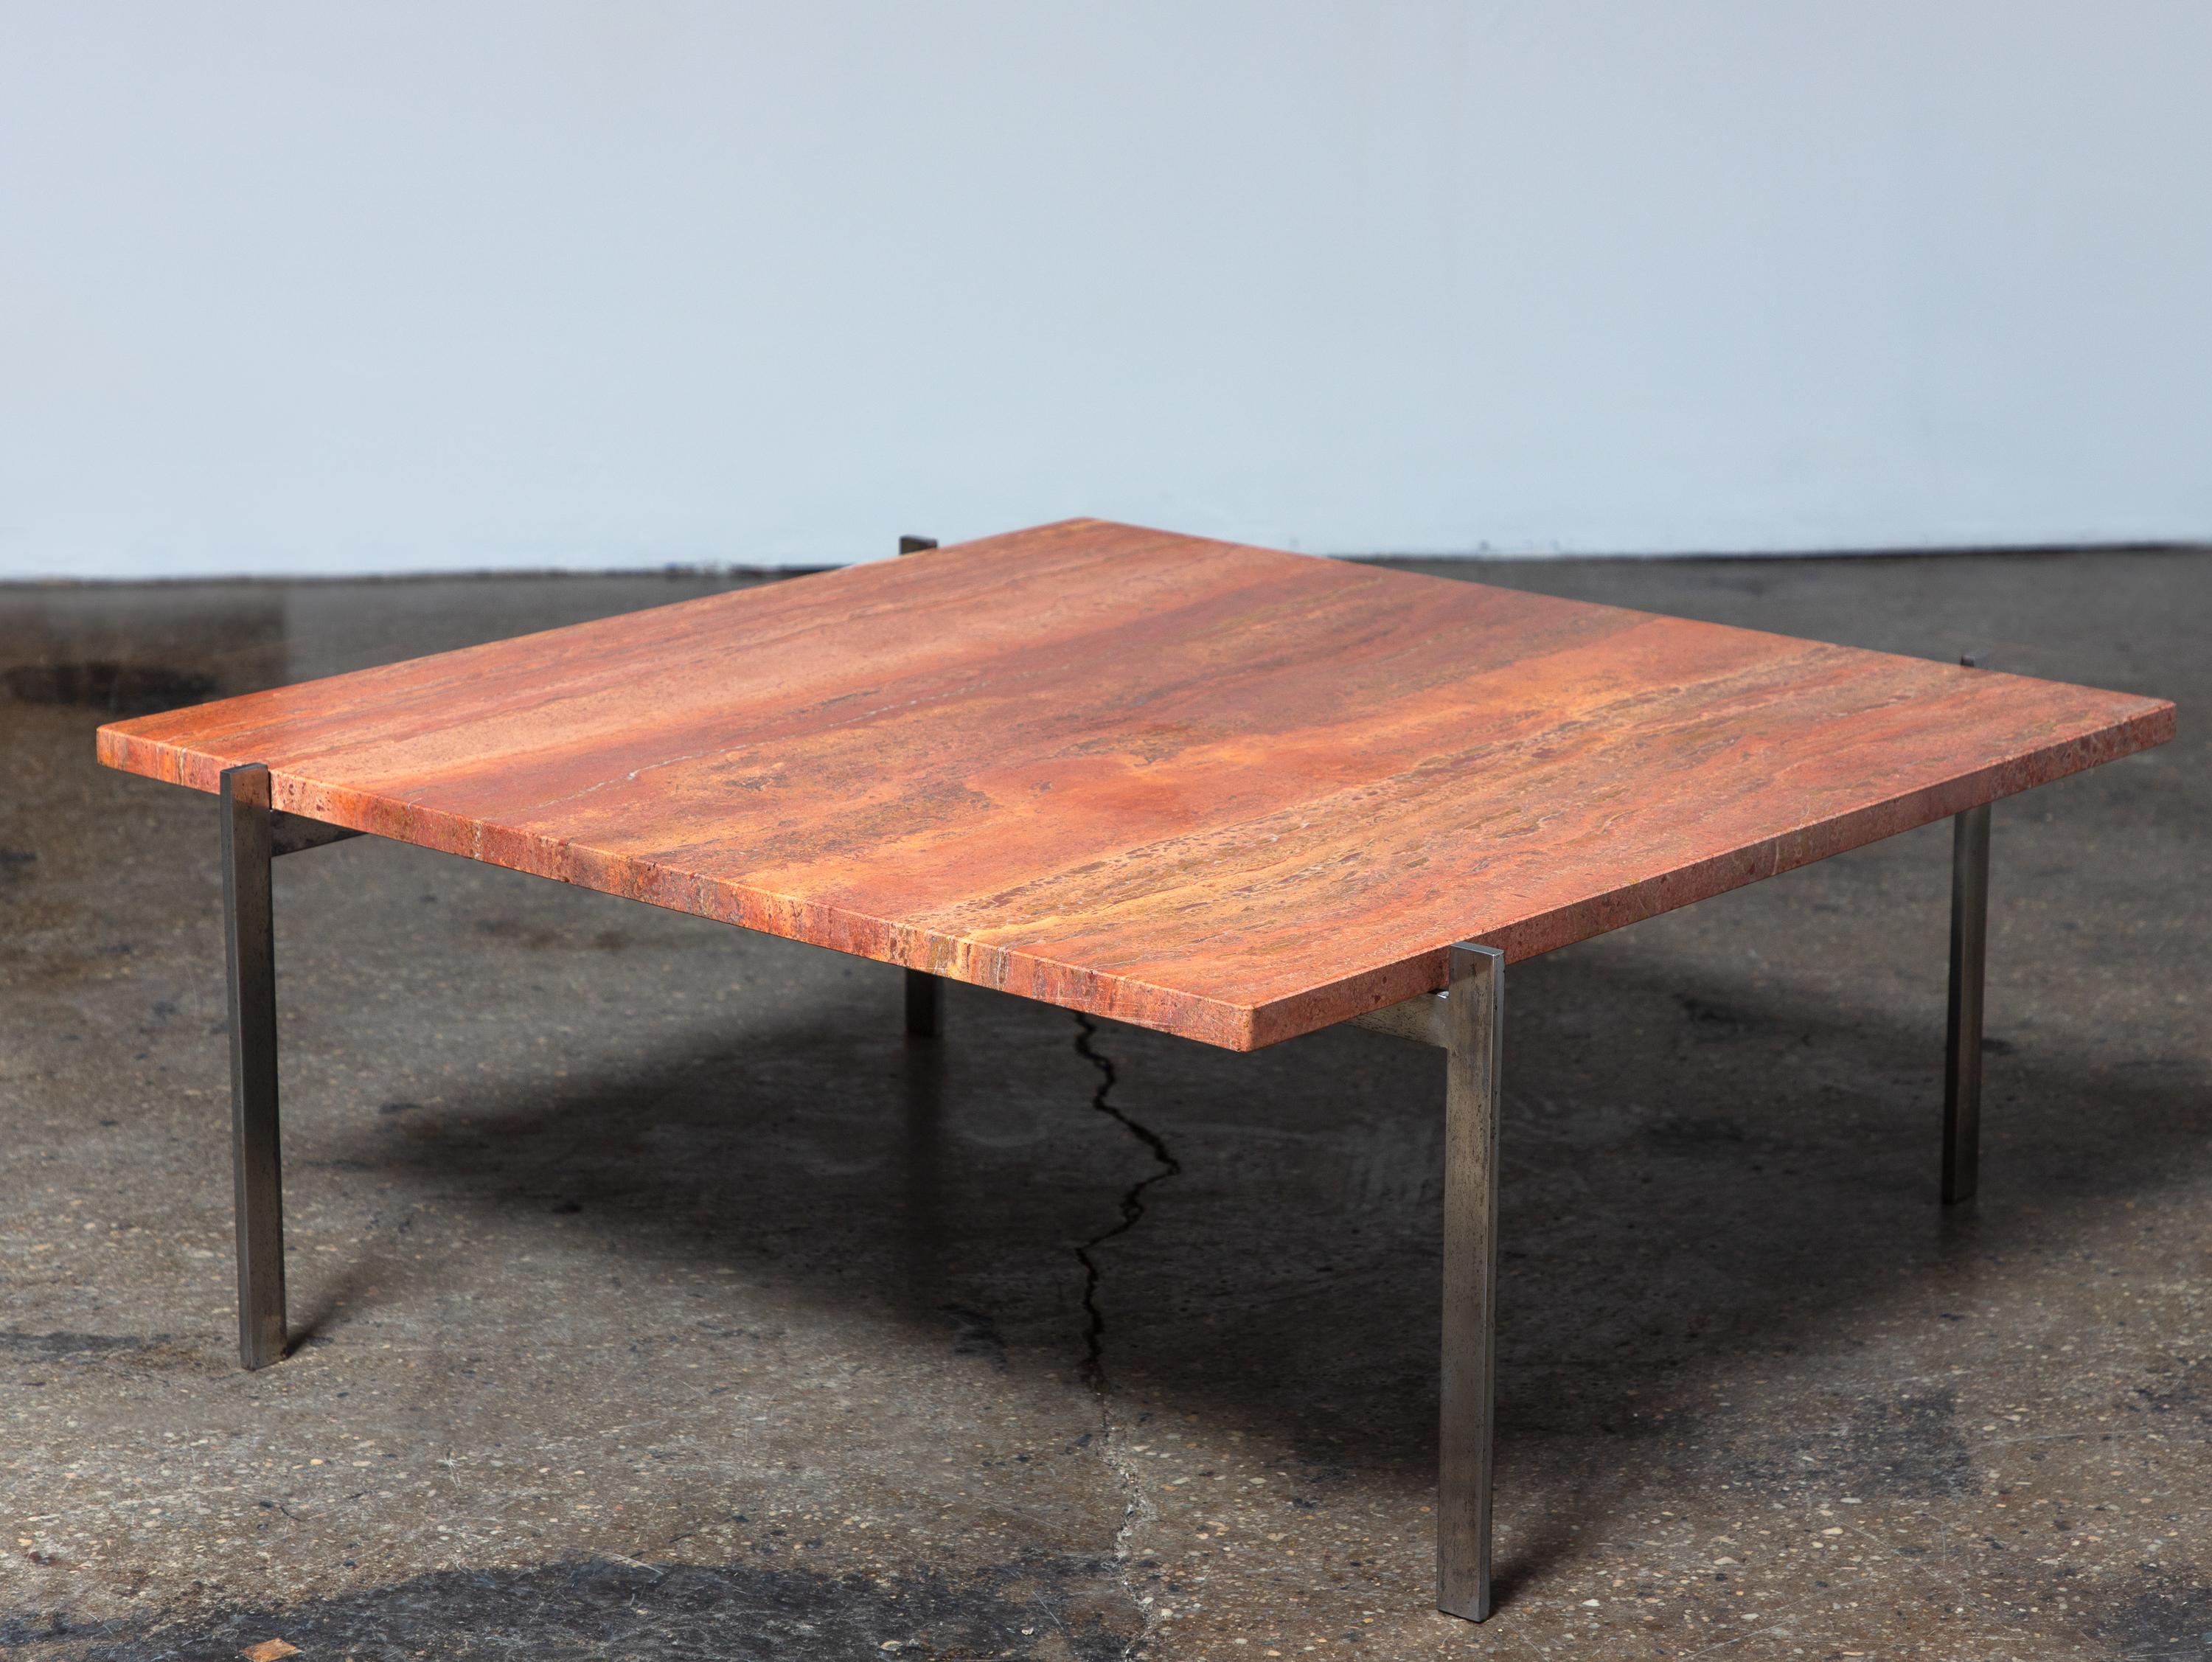 Table PK61 précoce avec un spectaculaire plateau en pierre rouge, conçue par Poul Kjaerholm pour E. Kold Christensen. Le design est épuré et minimaliste, exécuté avec précision à l'aide de matériaux luxueux et de haute qualité. Le plateau